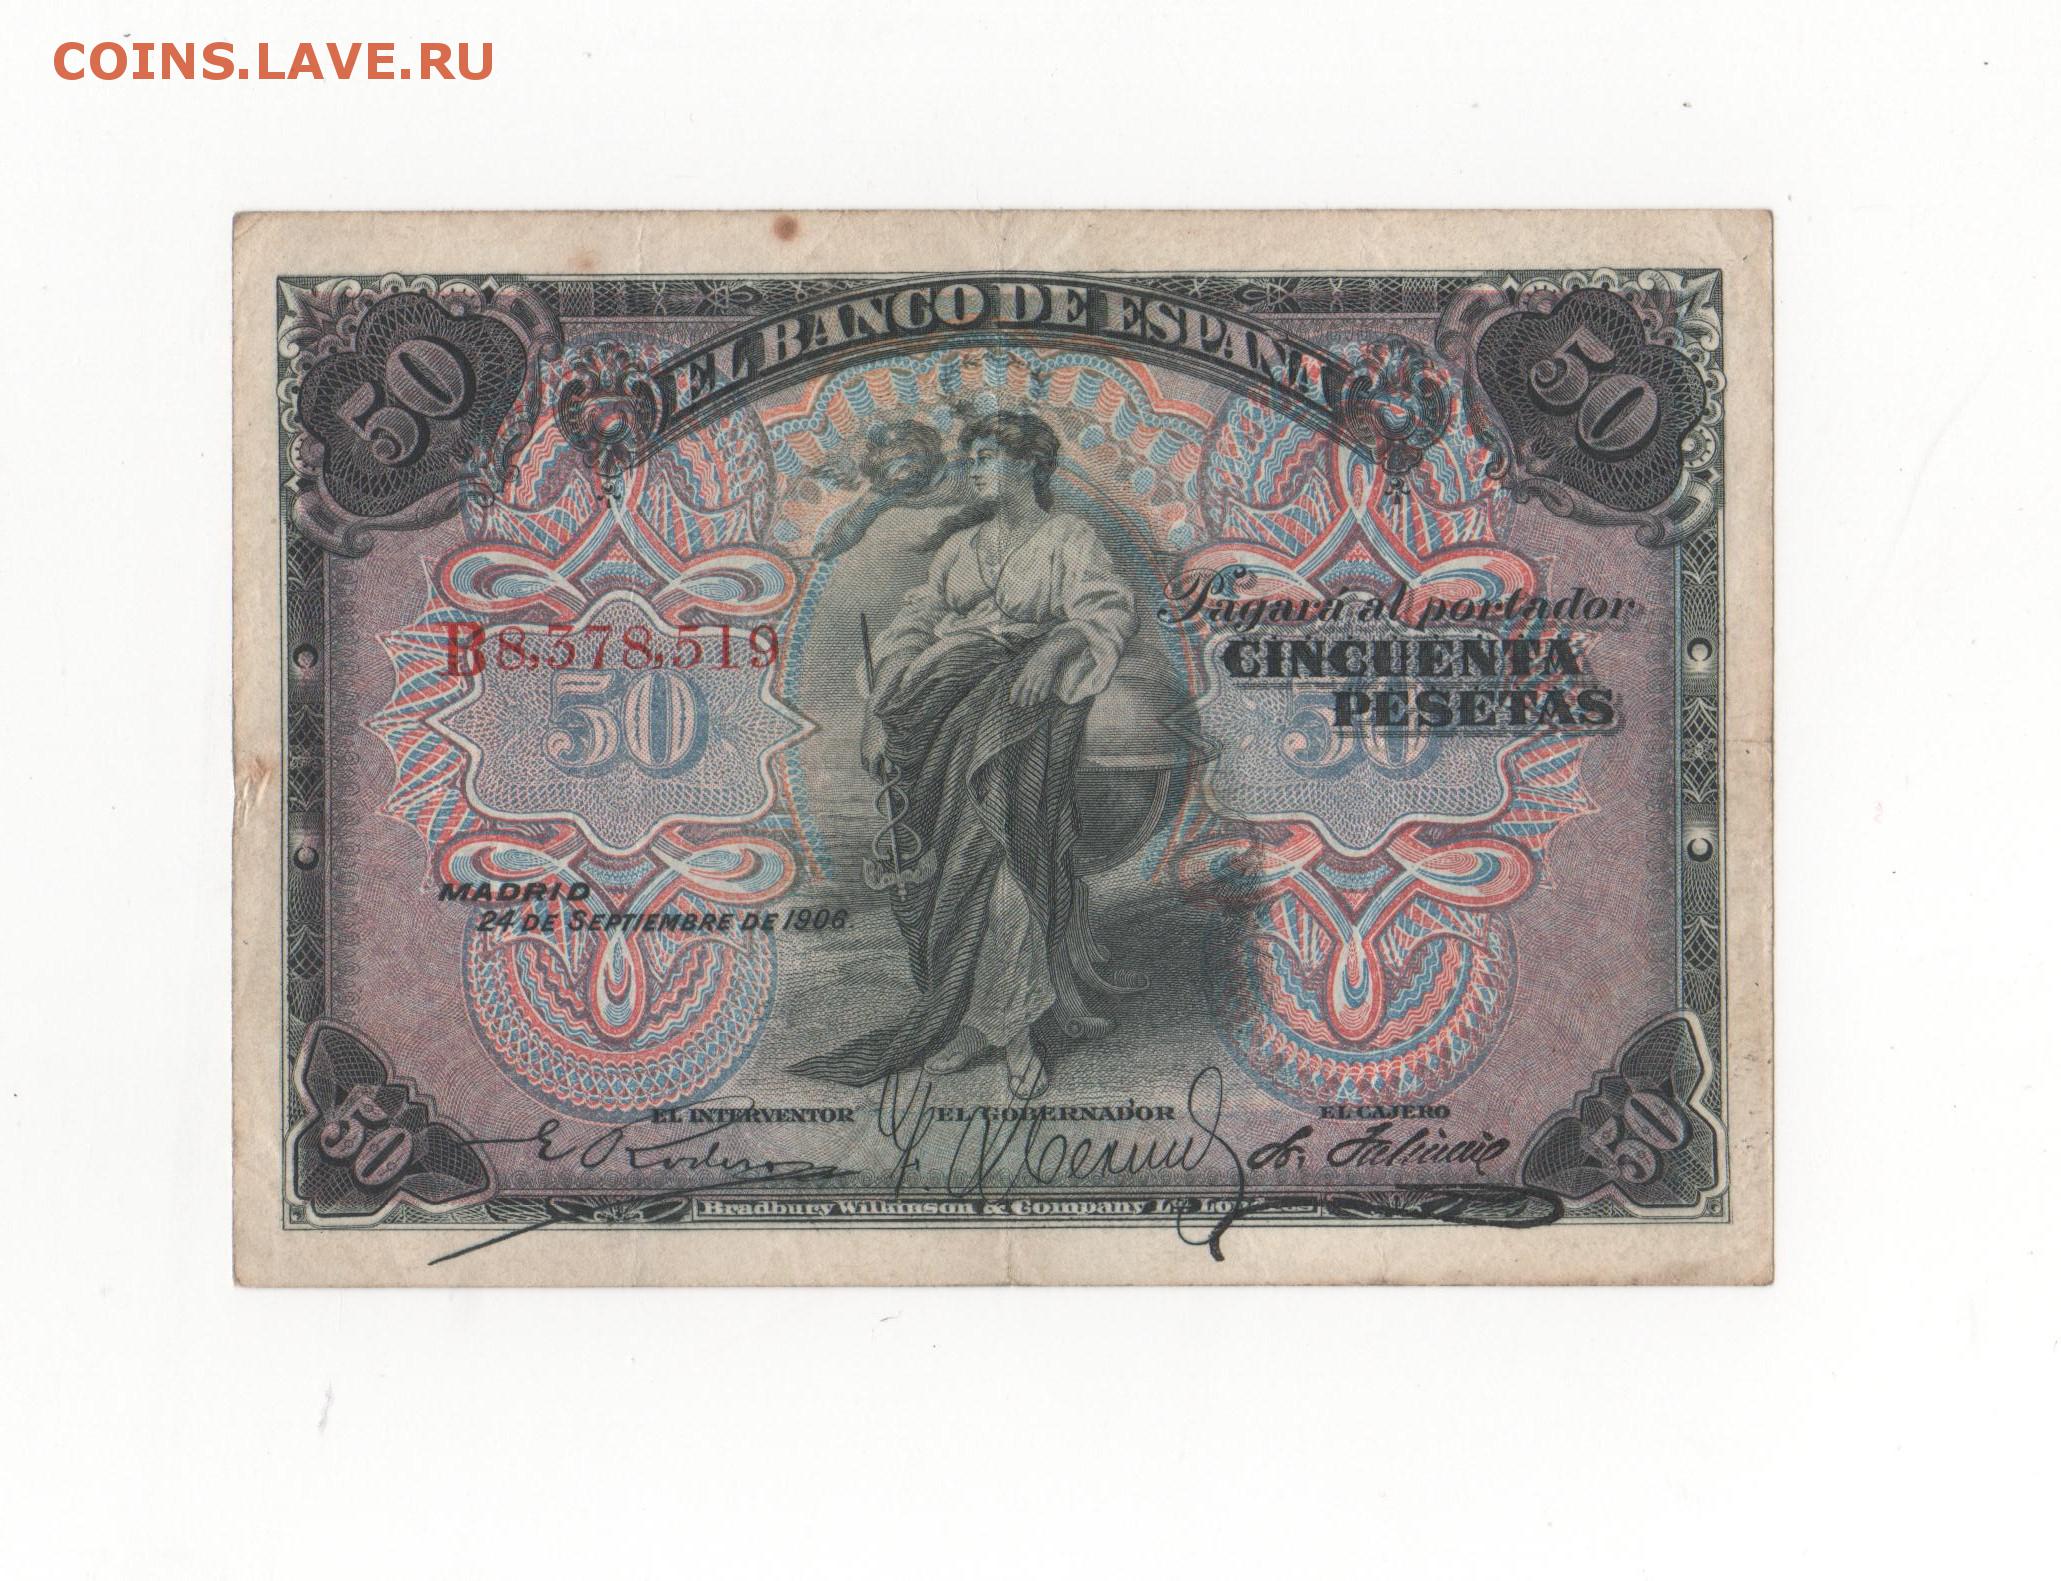 T me blank banknotes. 50 Песет 1906. Старые банкноты. Старинные денежные знаки. Старинные бумажные деньги.